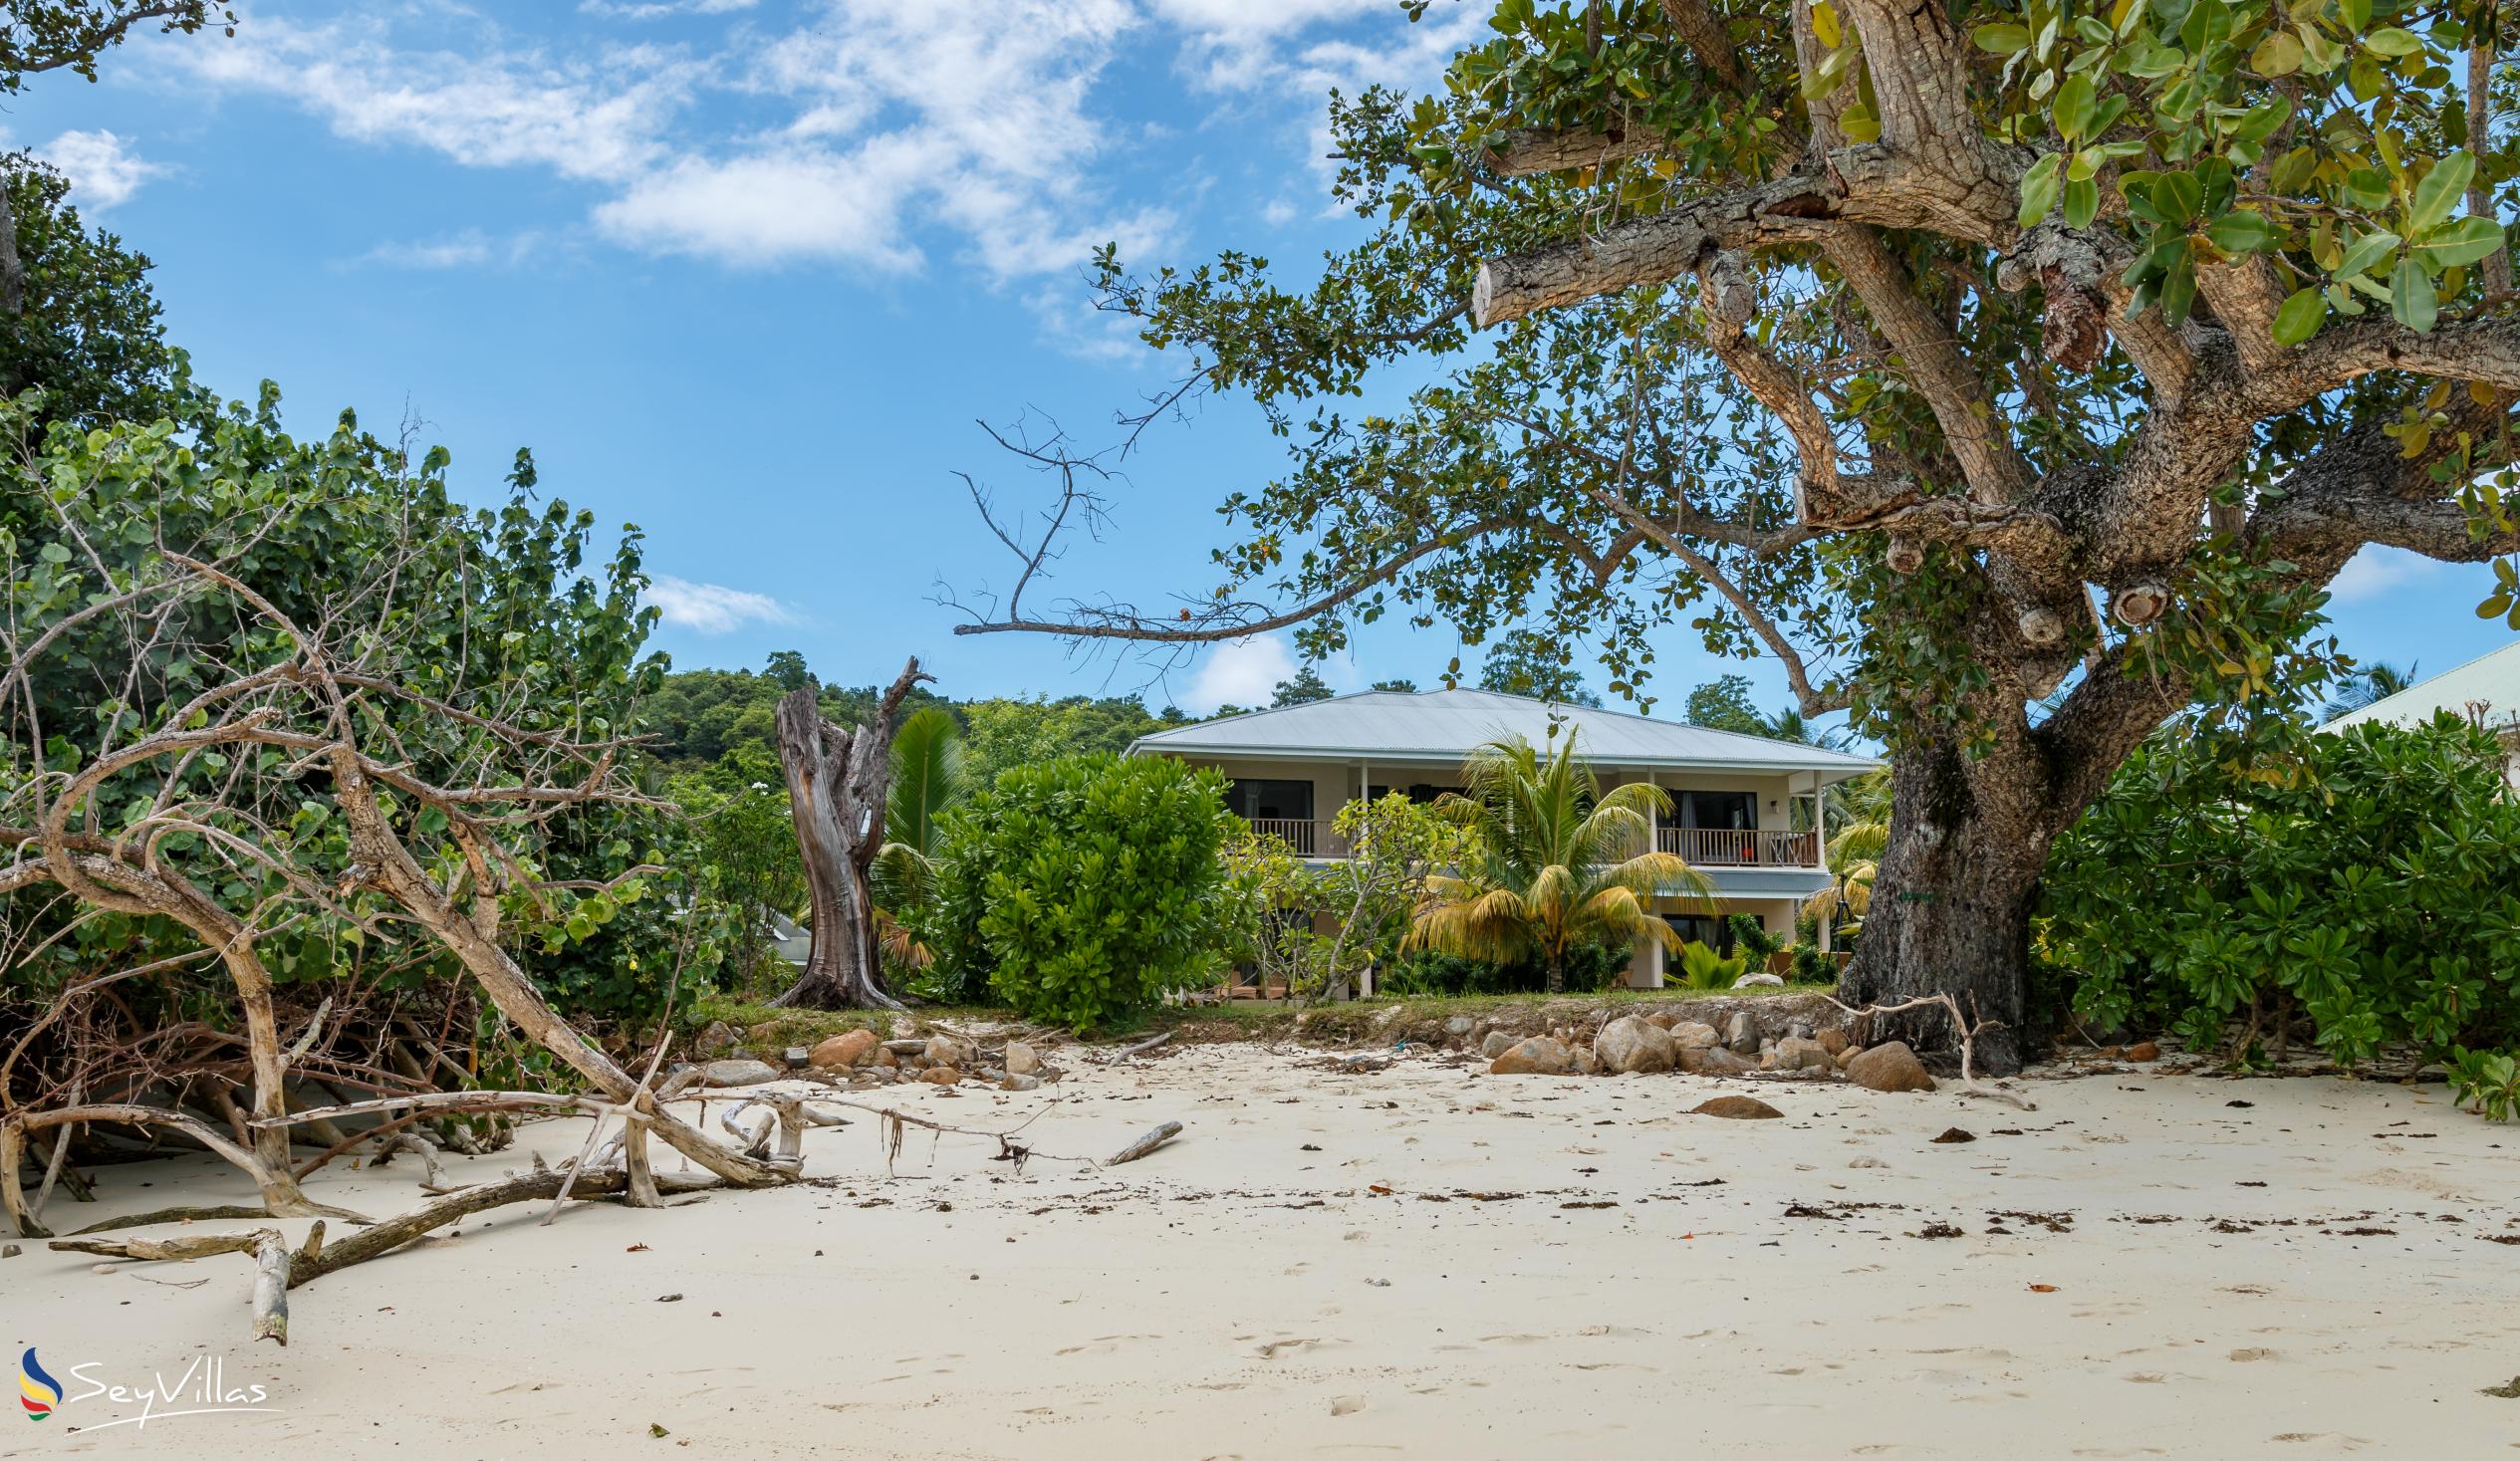 Foto 3: Surf Tropical Villa (Seascape Villa) - Aussenbereich - Cerf Island (Seychellen)